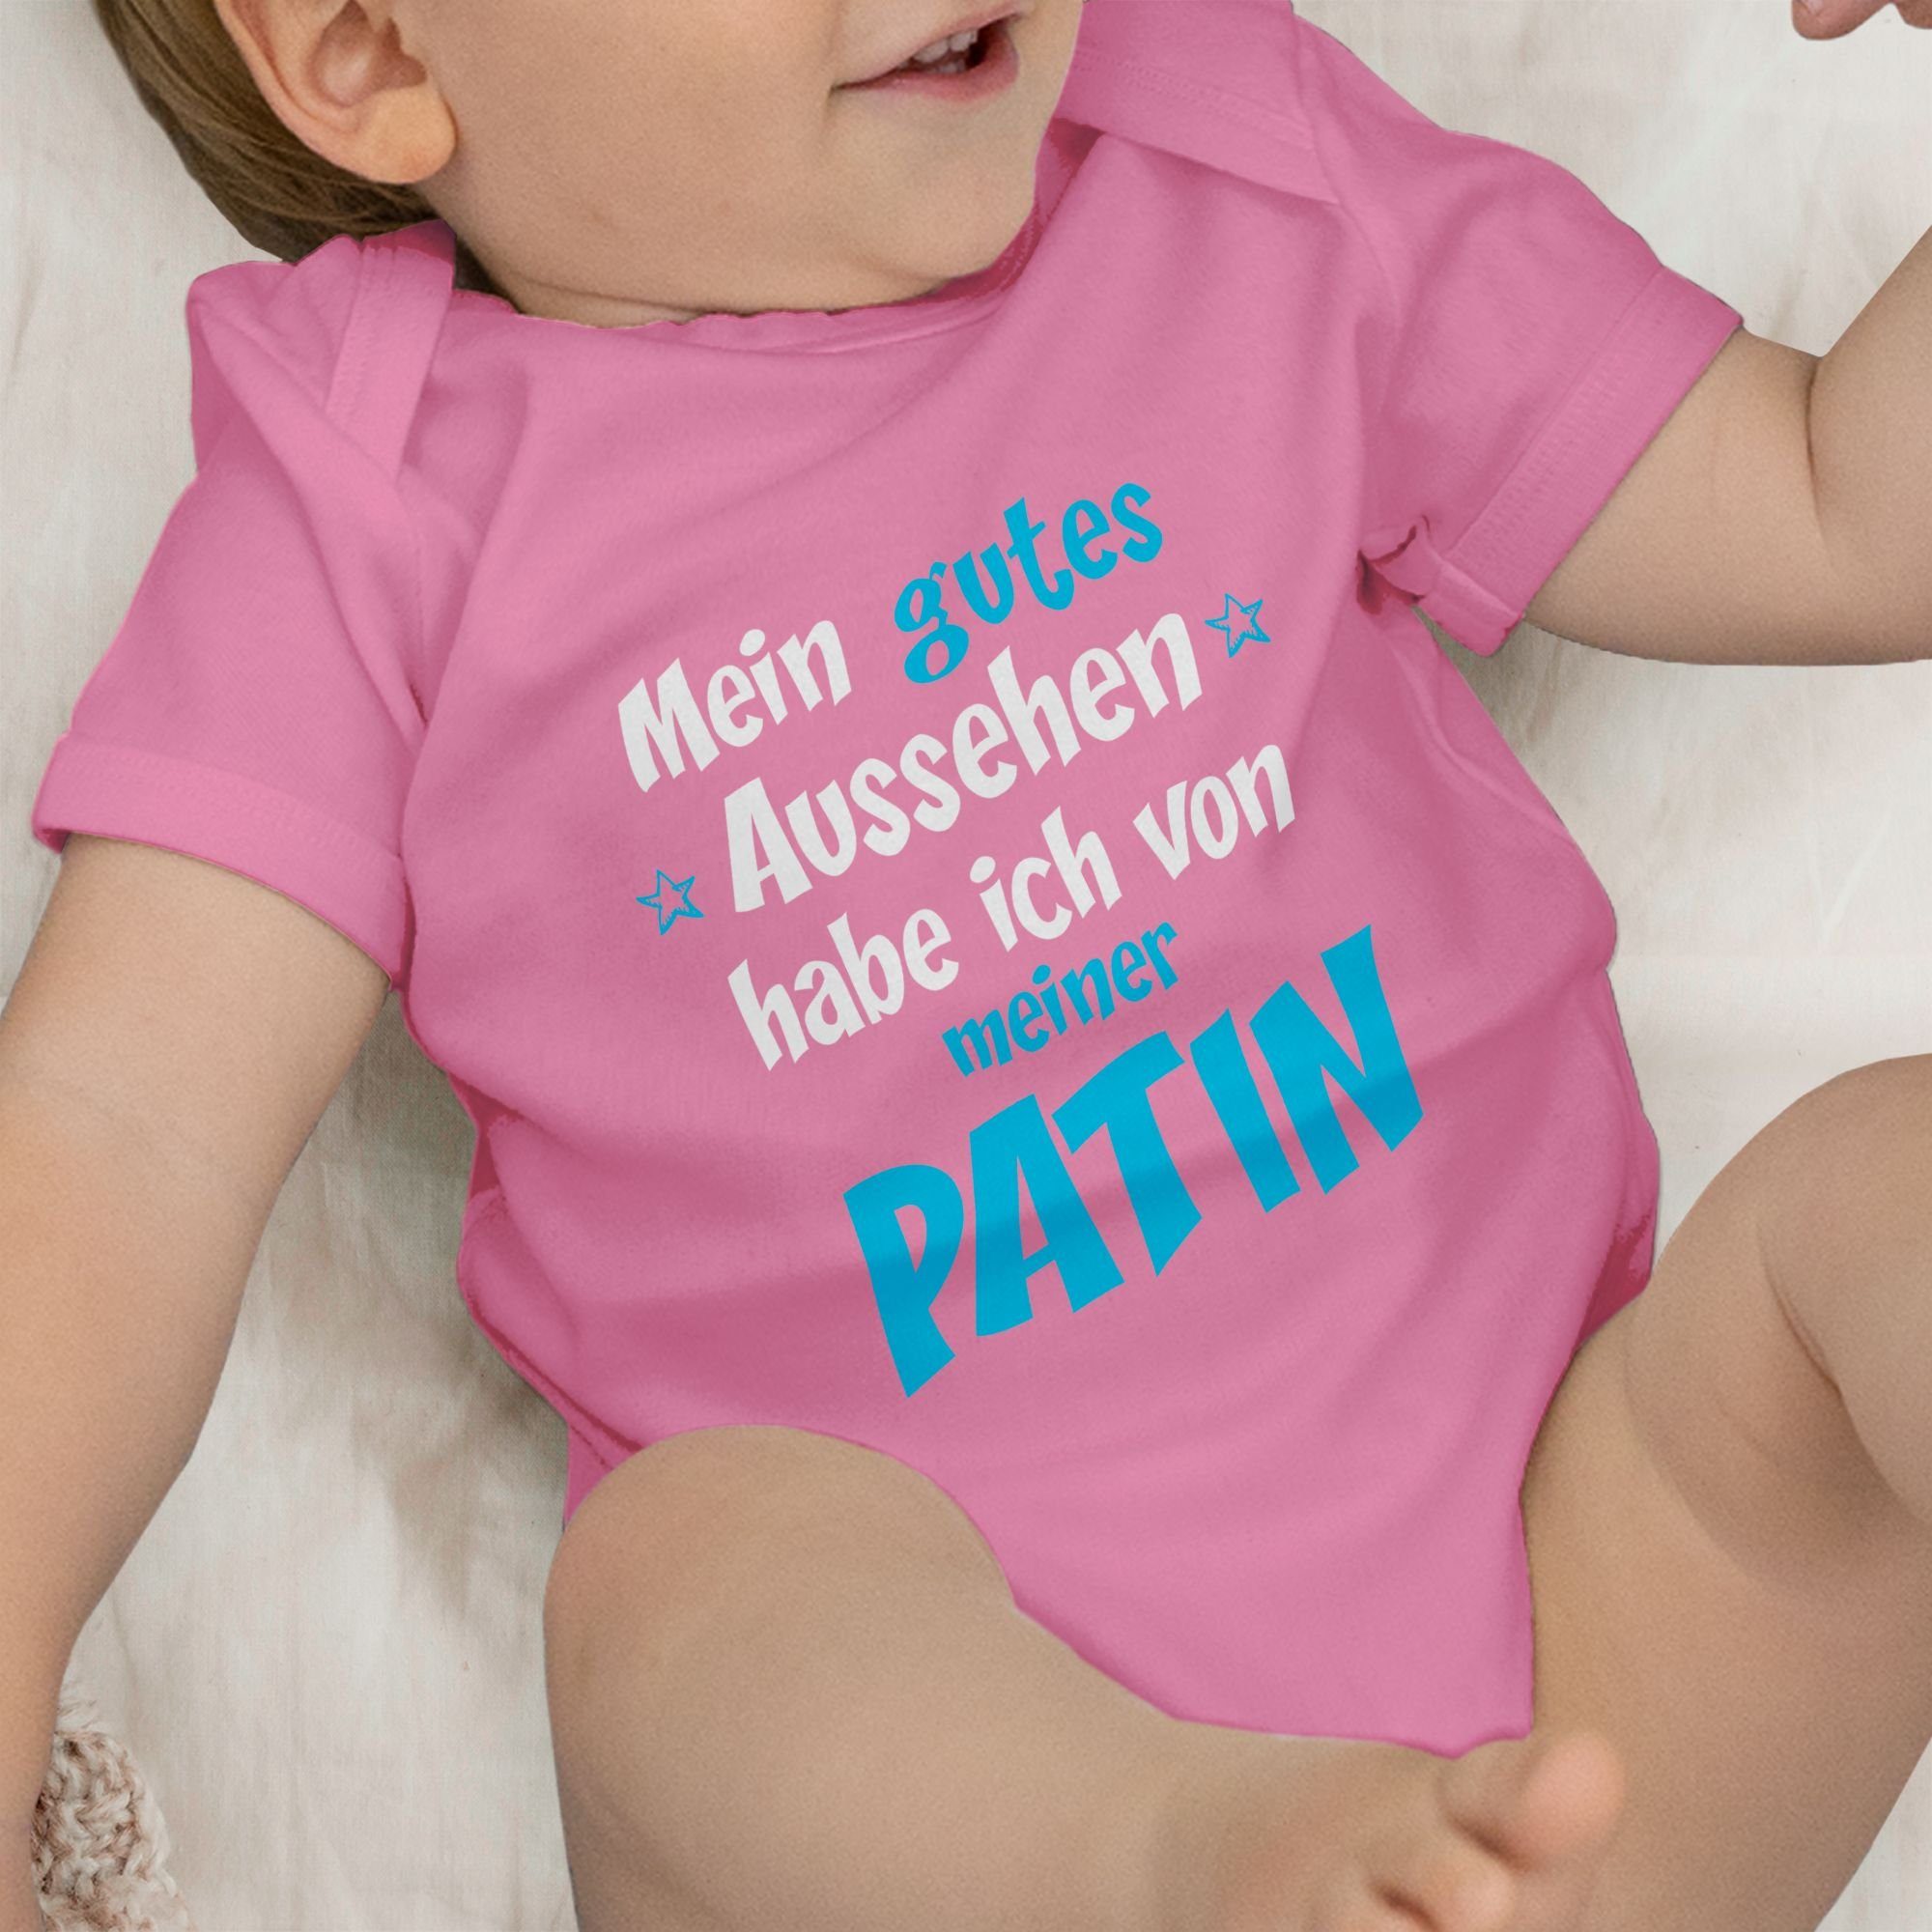 Patentante 2 Patin Pink Baby blau/weiß Shirtbody Shirtracer - Gutes Aussehen Junge